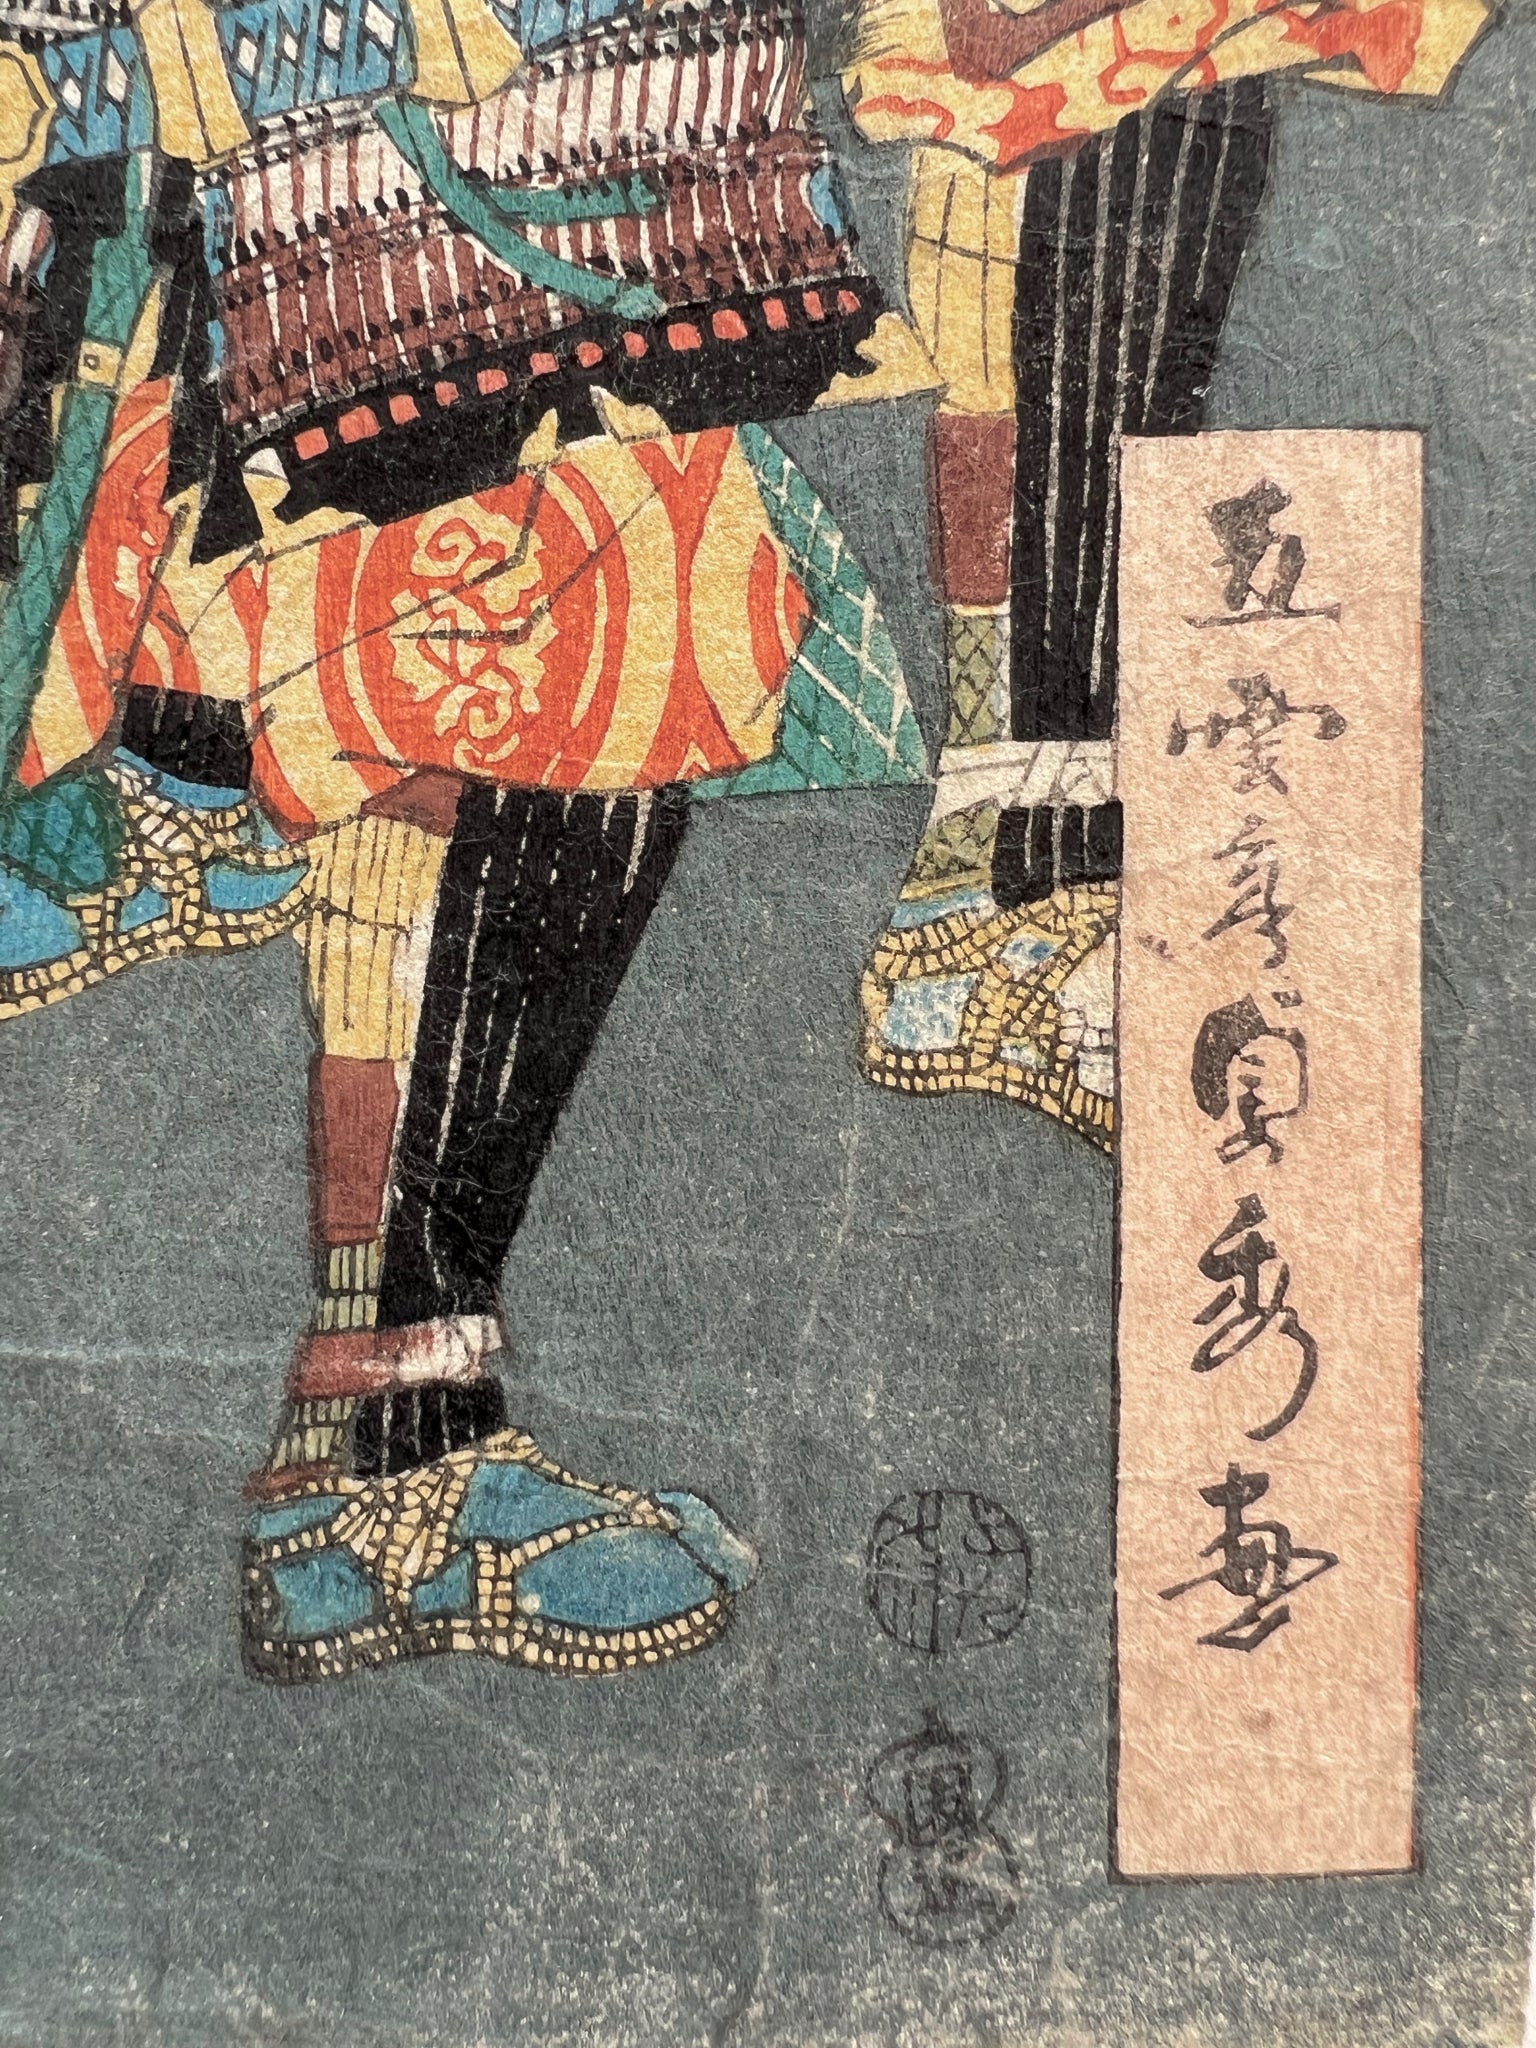 triptyque estampe japonaise samouraï portant des têtes coupées au bout de leurs lances, la signature de l'artiste